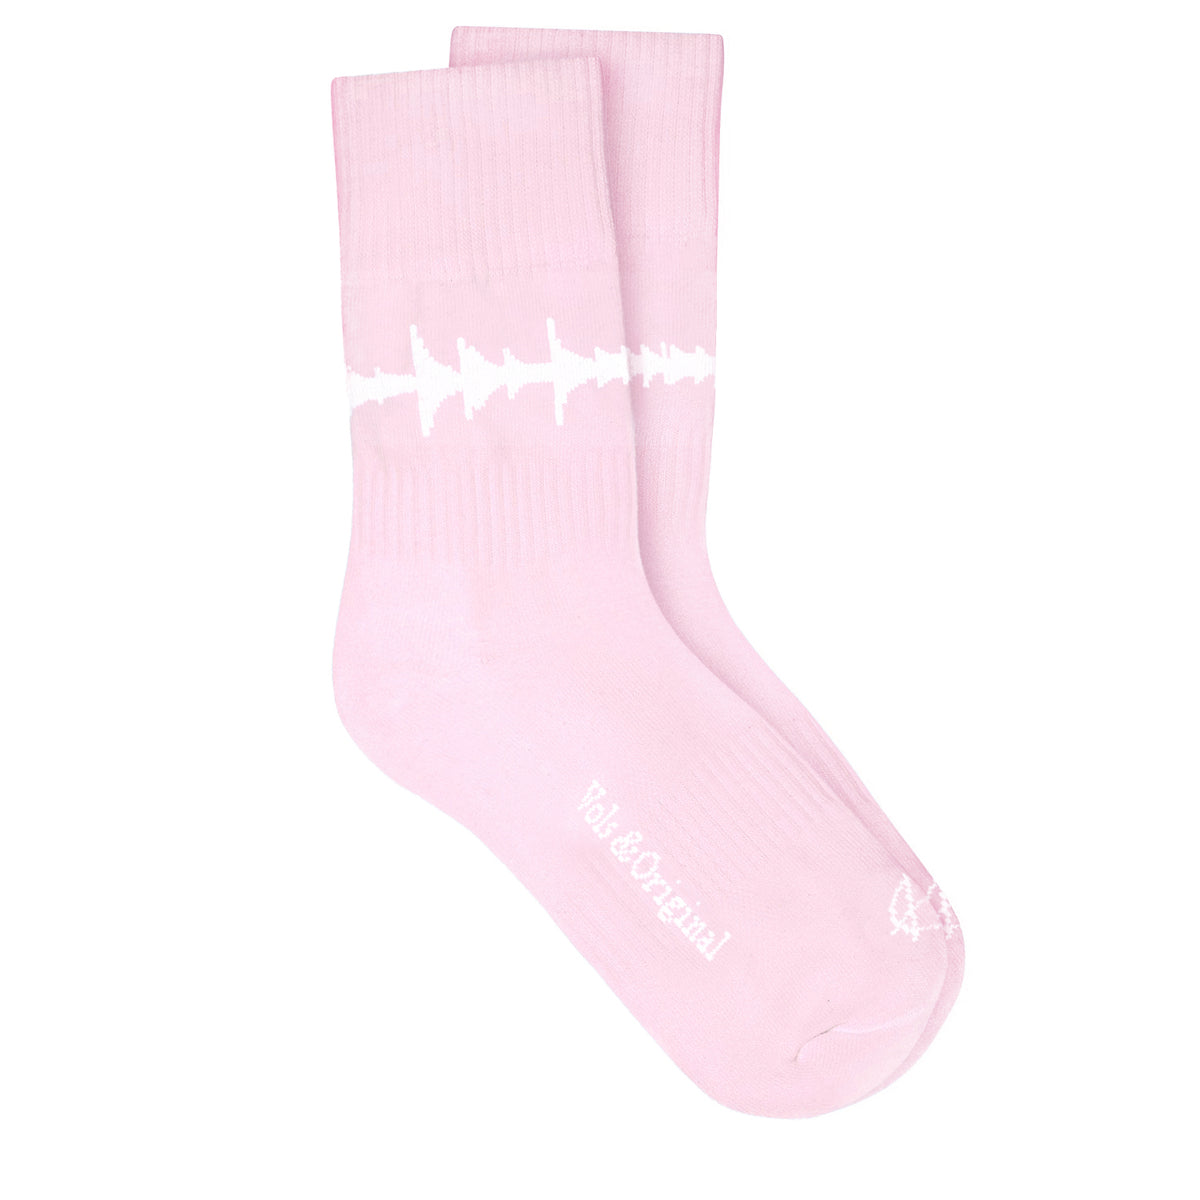 &#39;Amen Break&#39; Socks Pink 90% Cotton